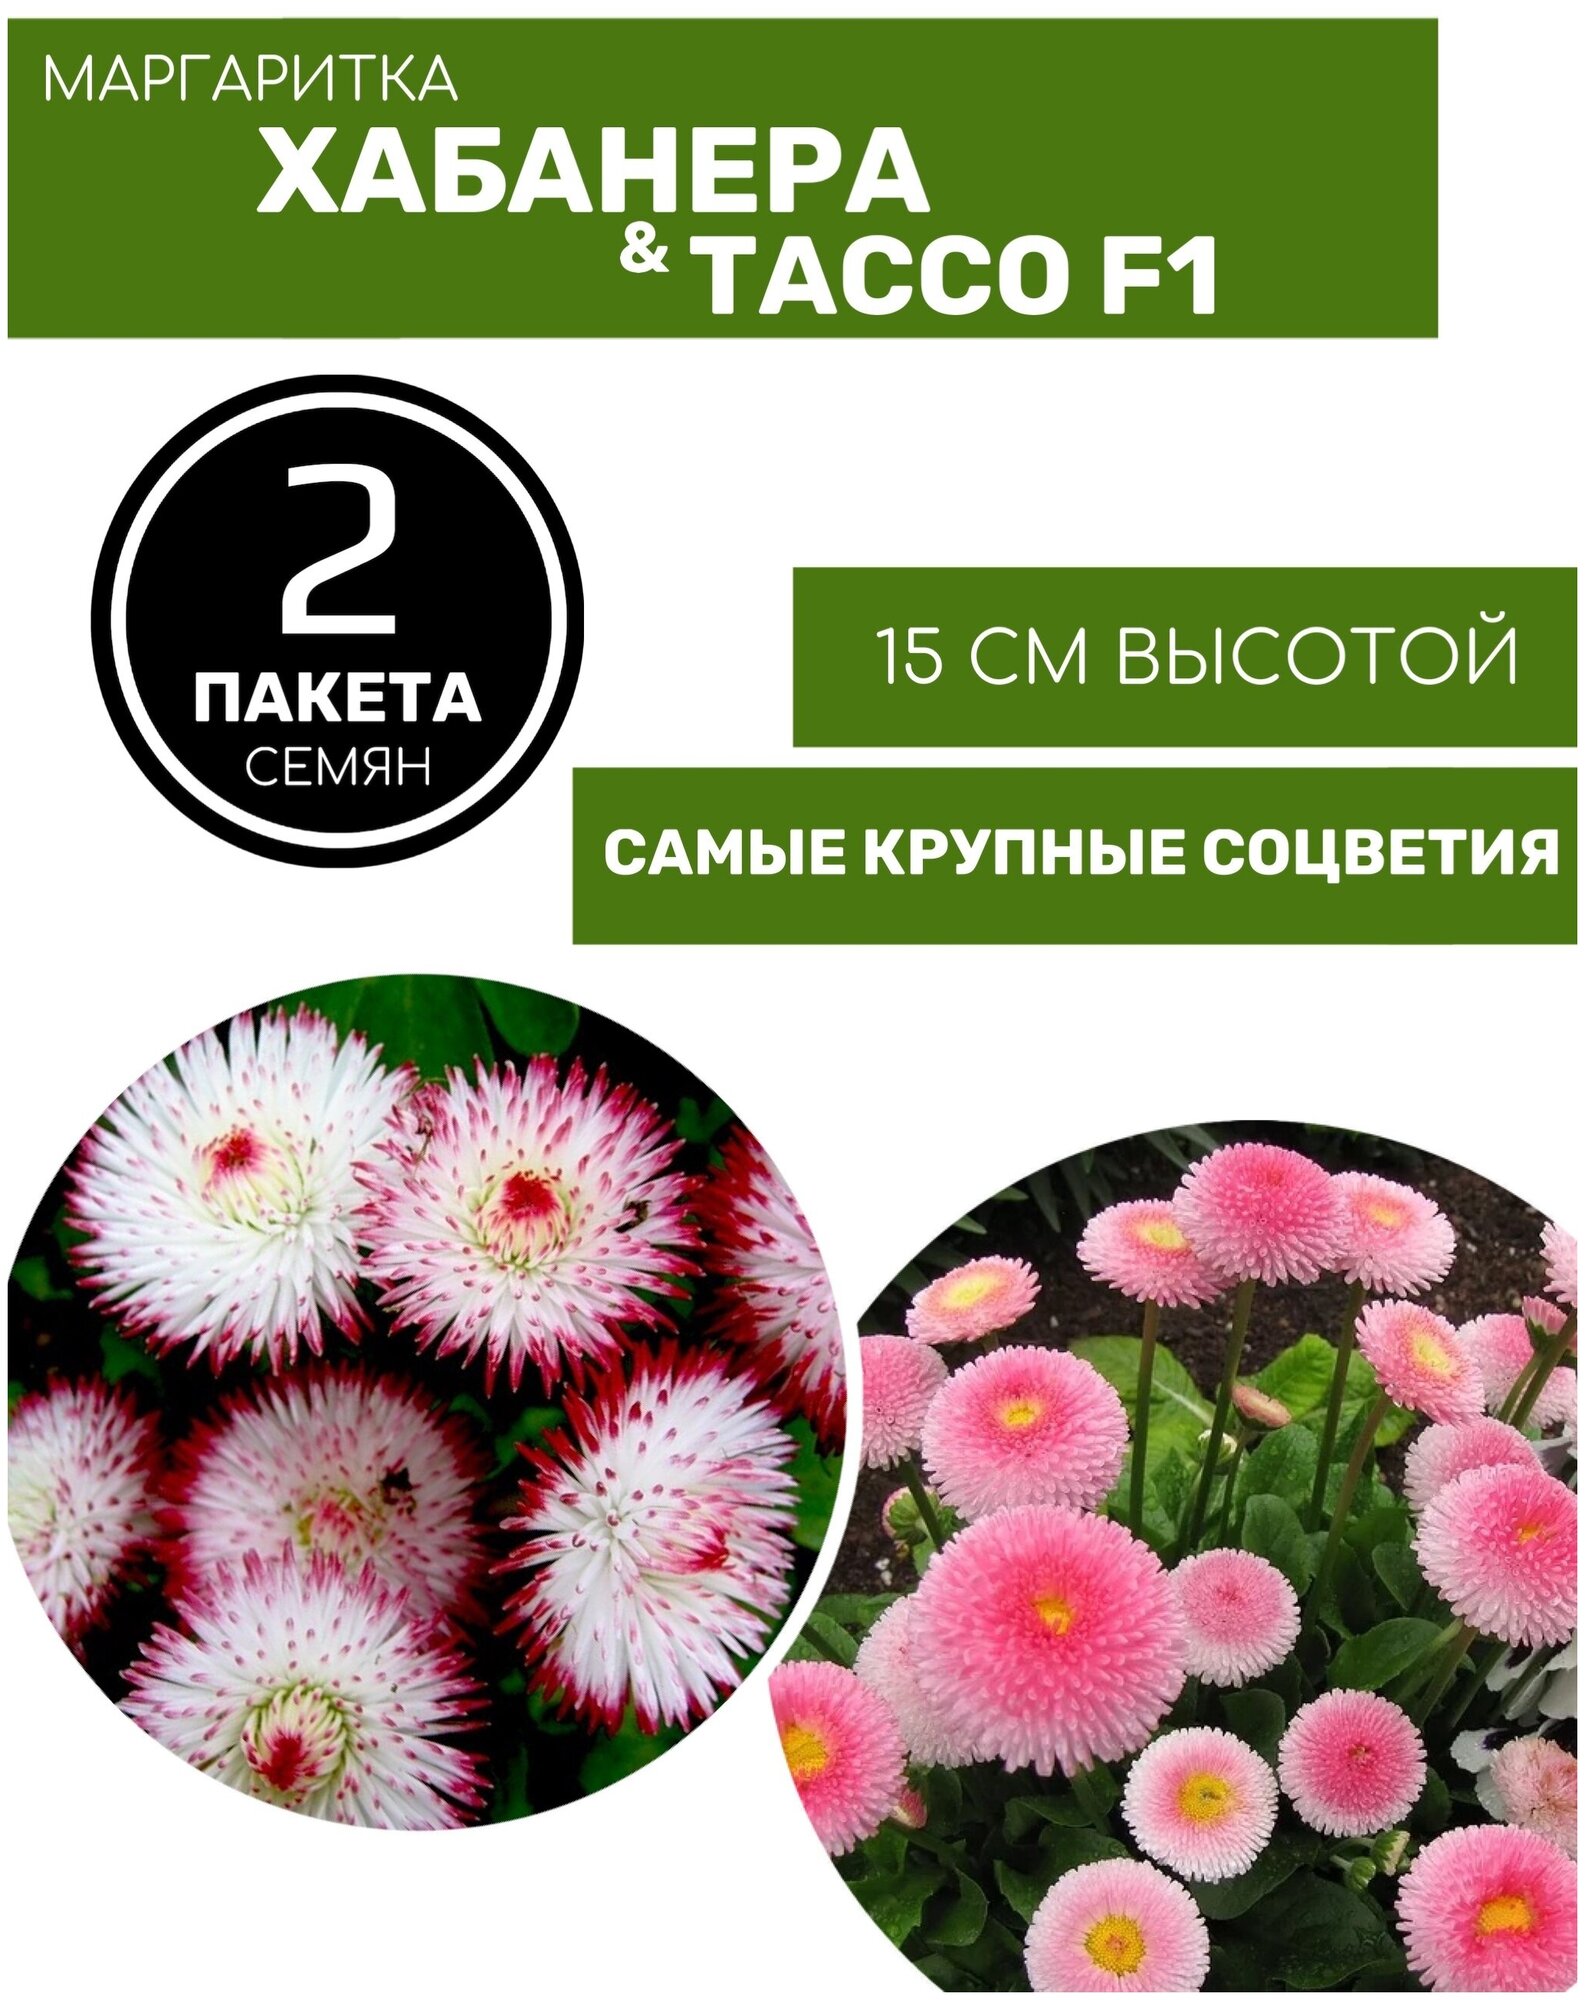 Цветы Маргаритка Тассо F1 (20шт семян) и Маргаритка Хабанера (15шт семян) 2 пакета